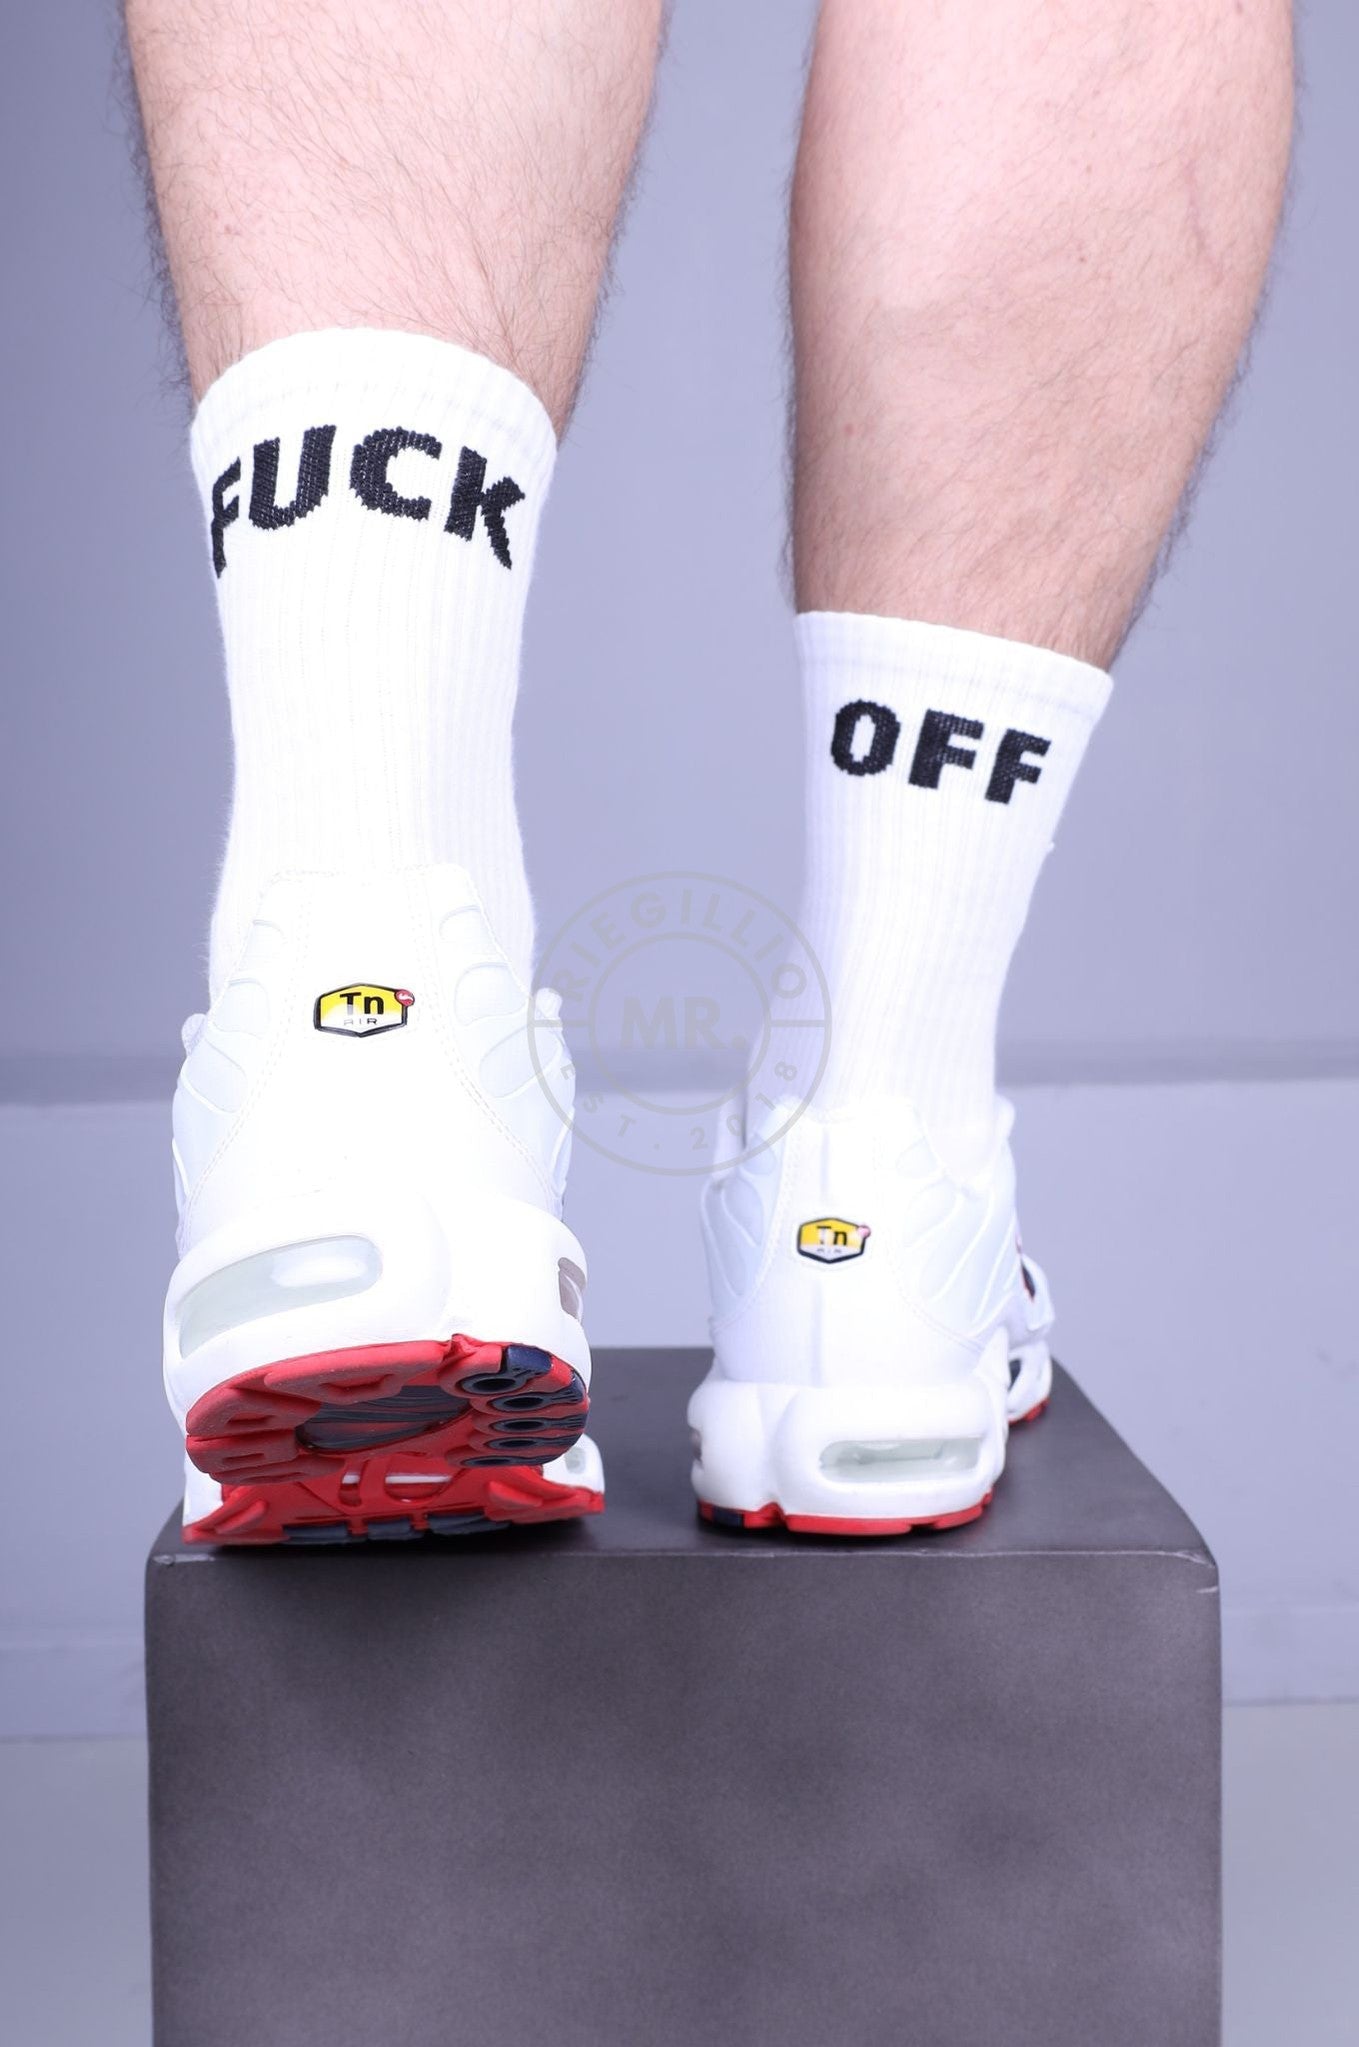 SNKRFTSH Socks - FUCK OFF